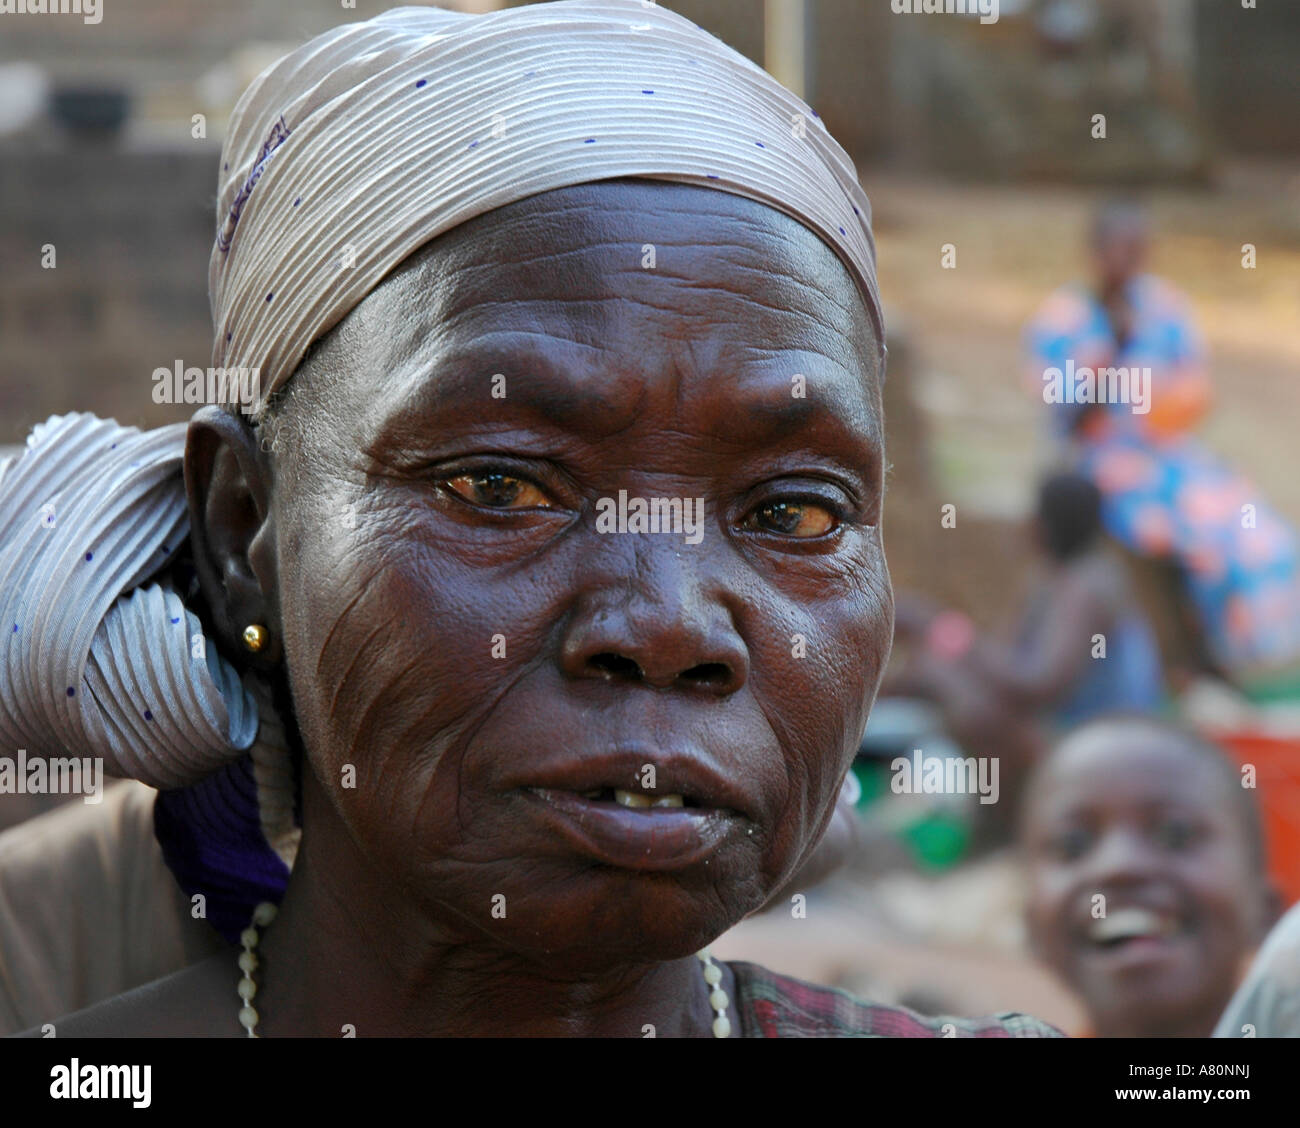 Frau mit traditionellen Gesicht Narben Stockfotografie - Alamy